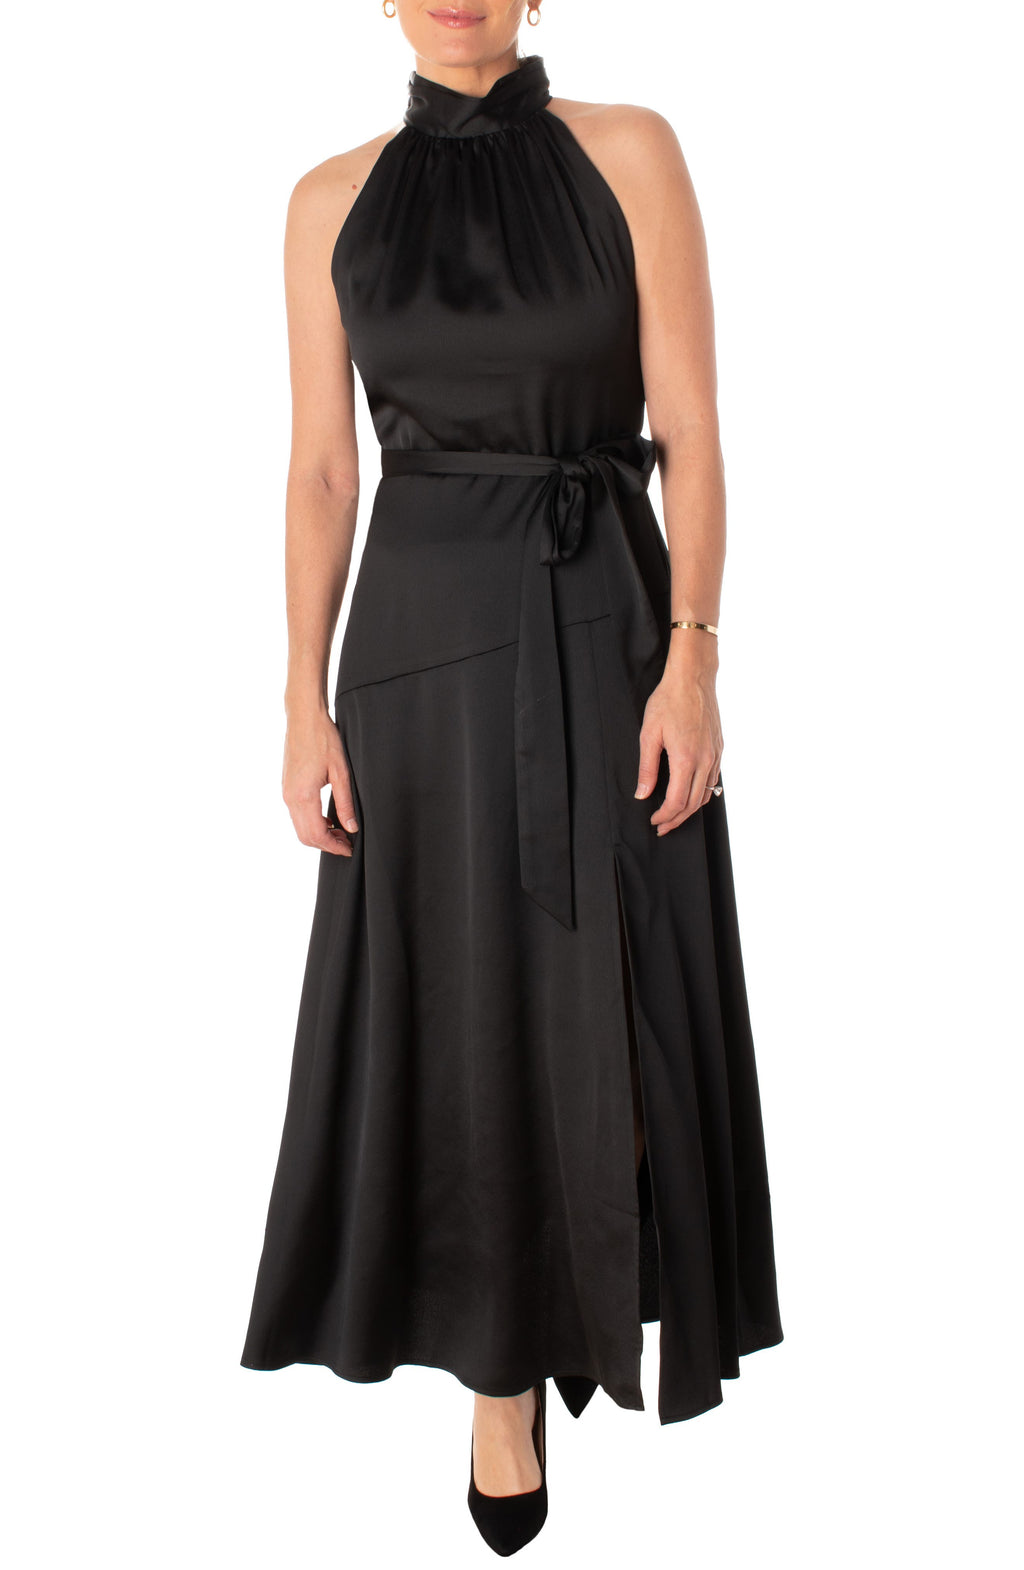 TAYLOR DRESSES Halter Neck Satin A-Line Dress, Main, color, BLACK